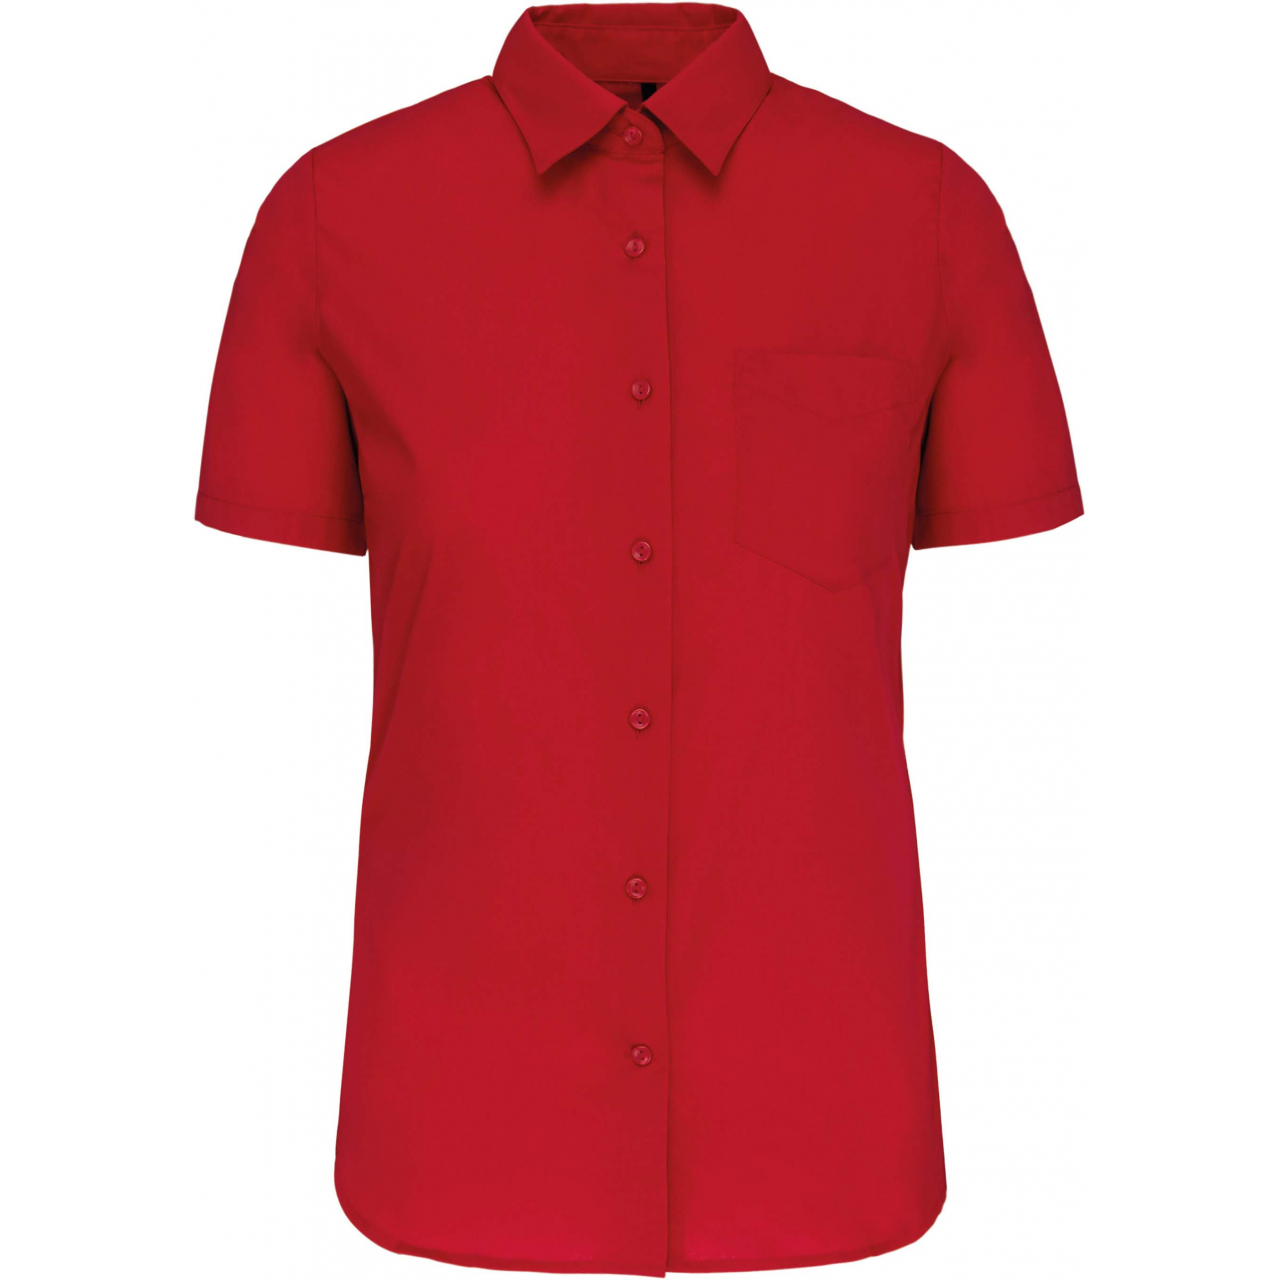 Košile dámská s krátkým rukávem Kariban Judith - červená, M